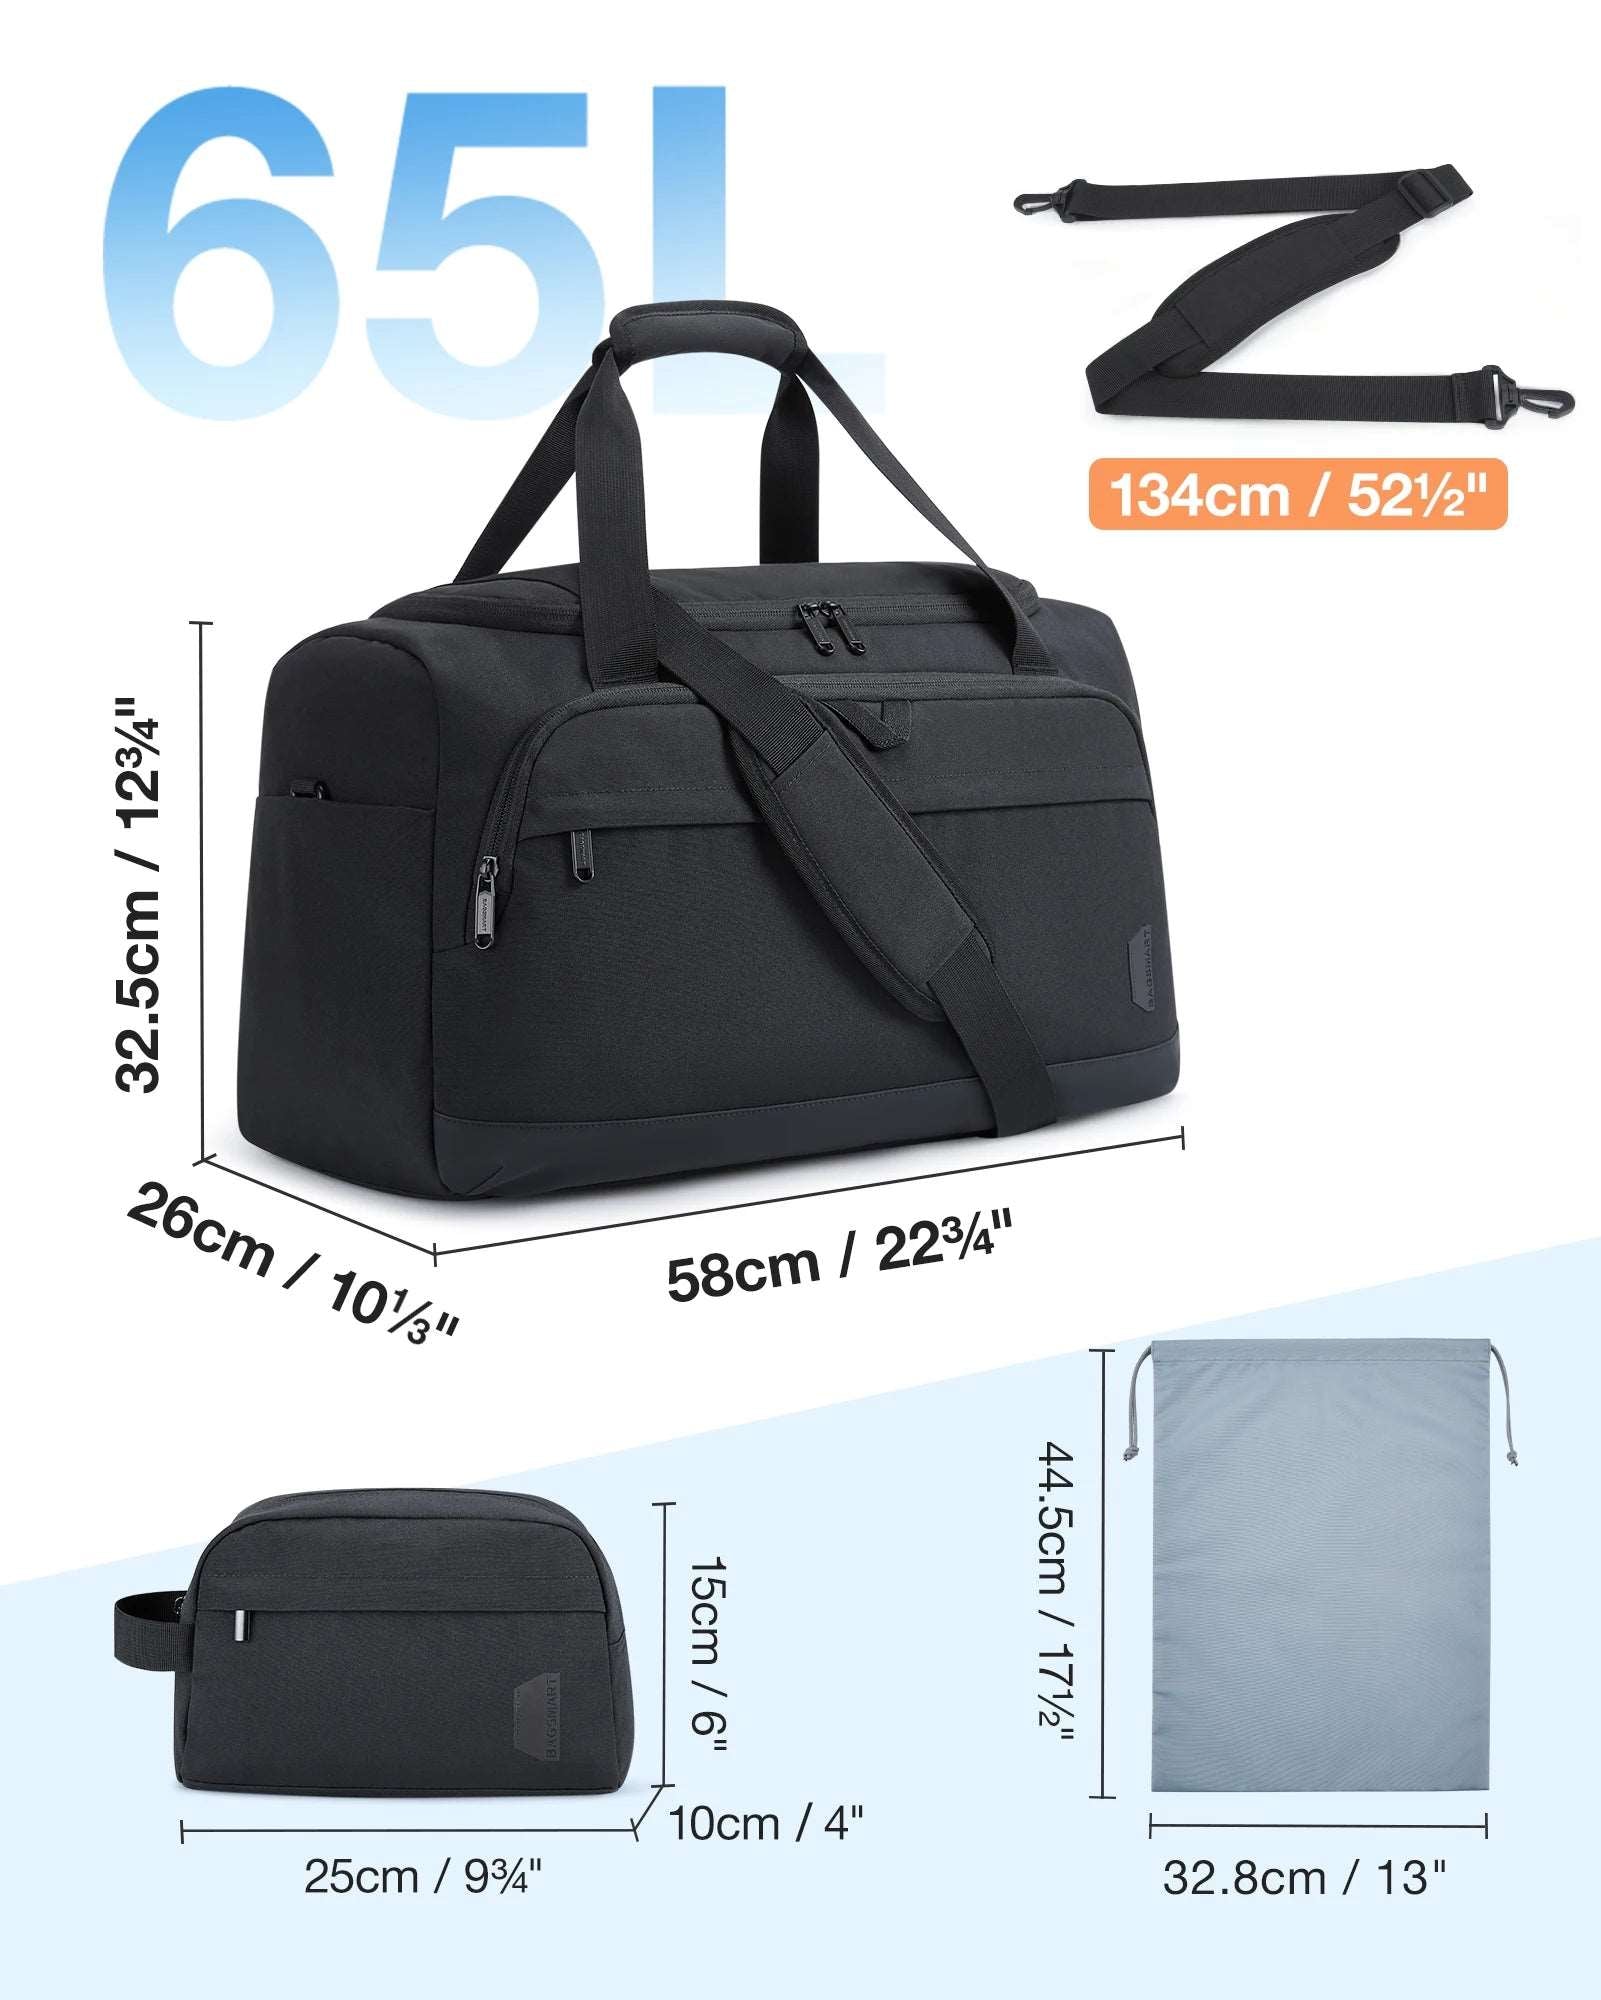 BAGSMART 2 Pcs Men's Tote Bag Large Capacity, Shoulder Duffle Bag